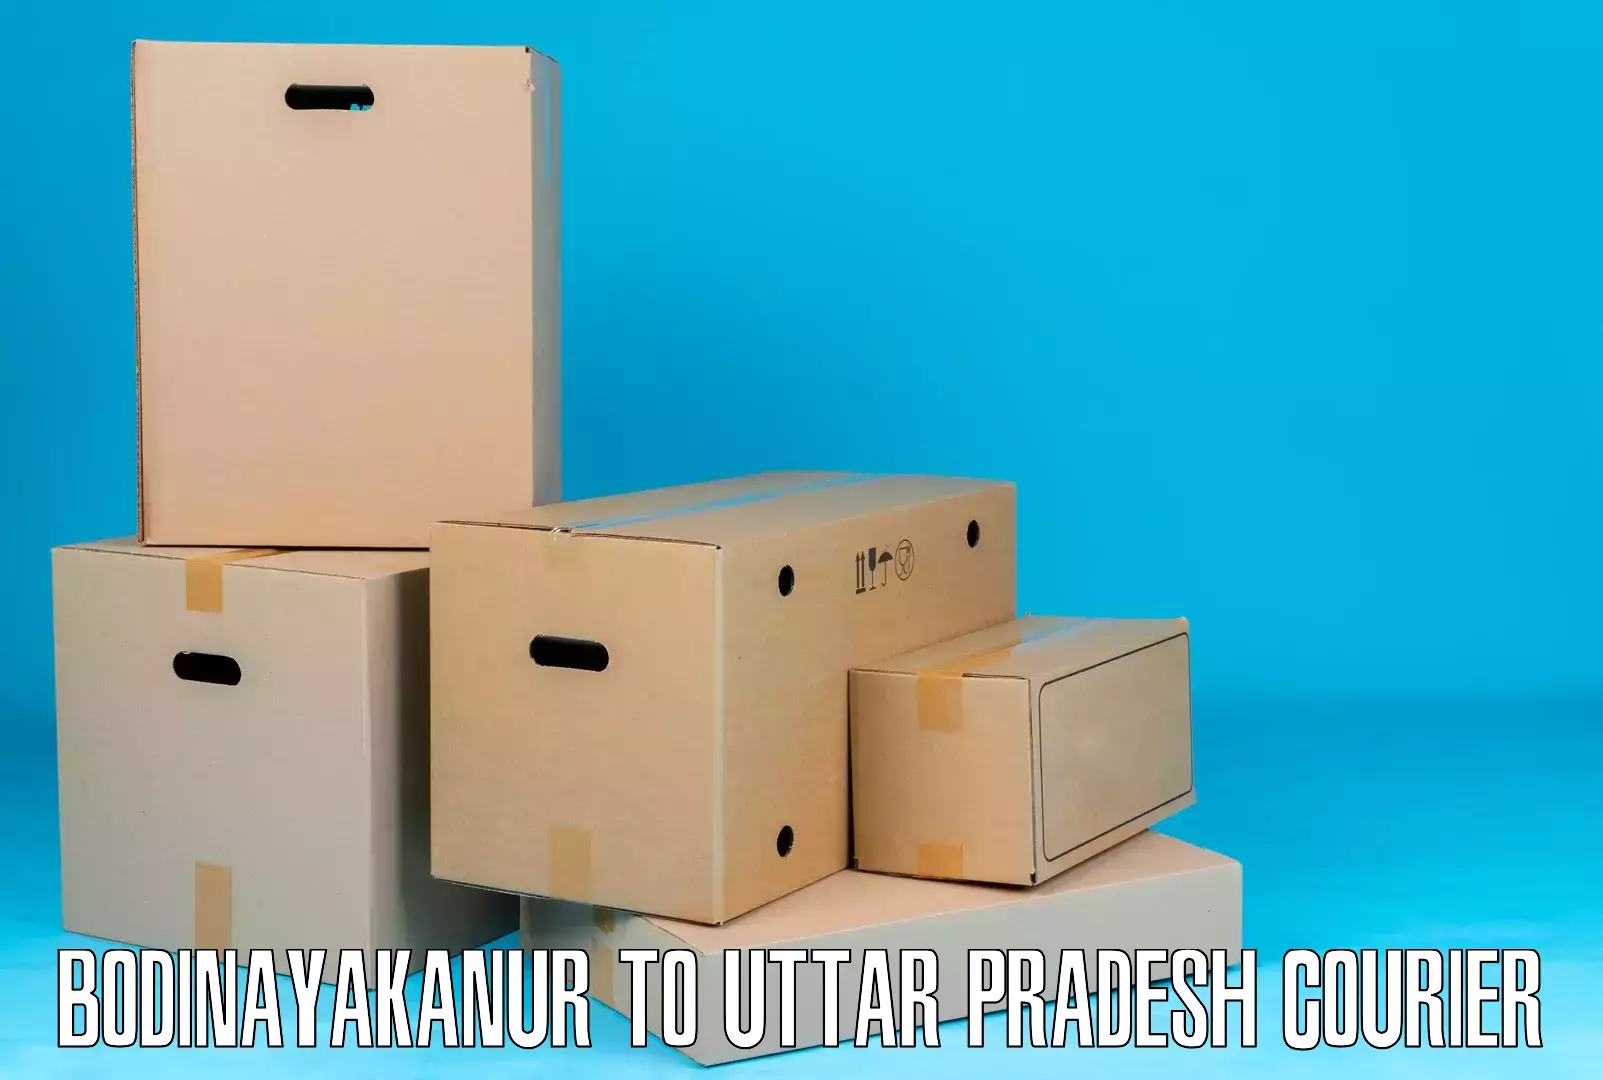 Quality courier partnerships Bodinayakanur to Afzalgarh